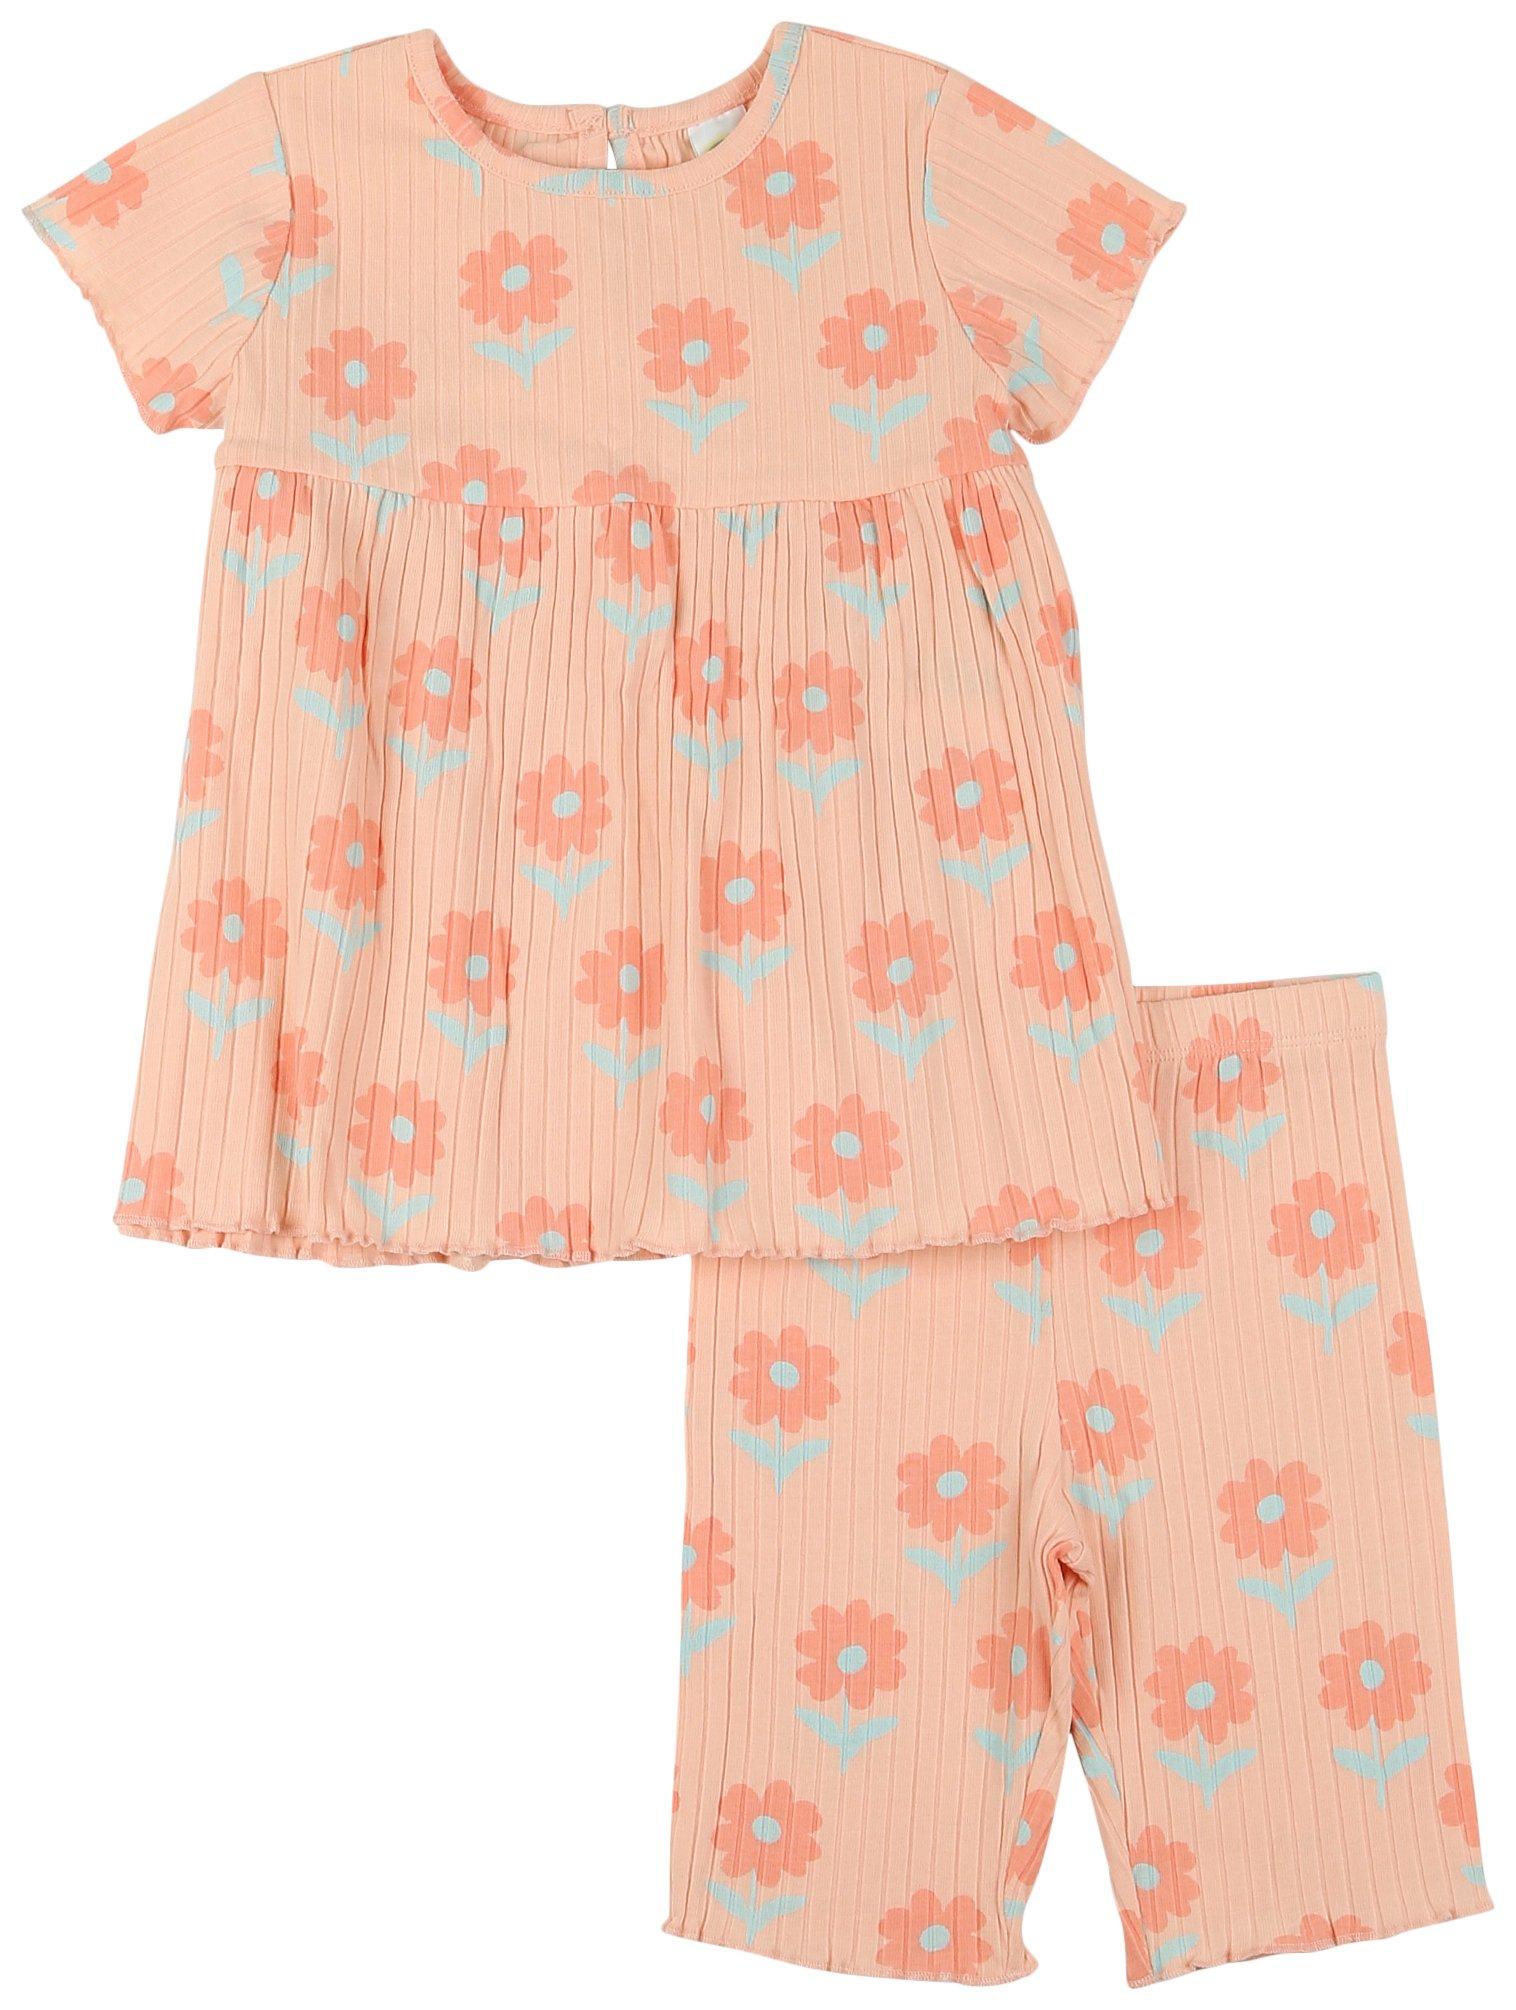 Toddler Girls 2pc. Short Sleeve Floral Ribbed Dress Set